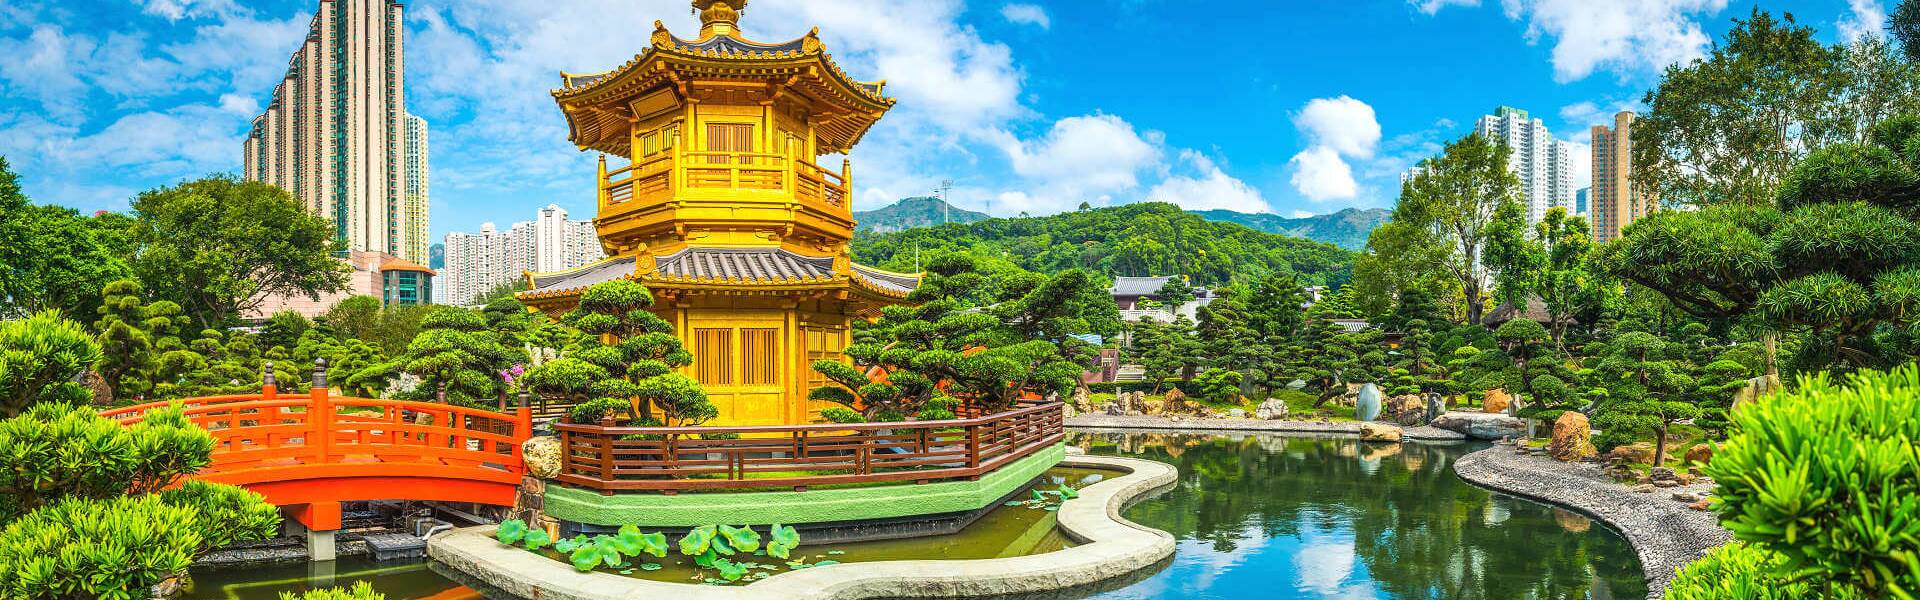 Der Nan Lian Garden von Hongkong wurde im Stil der Tang-Dynastie nachgebaut